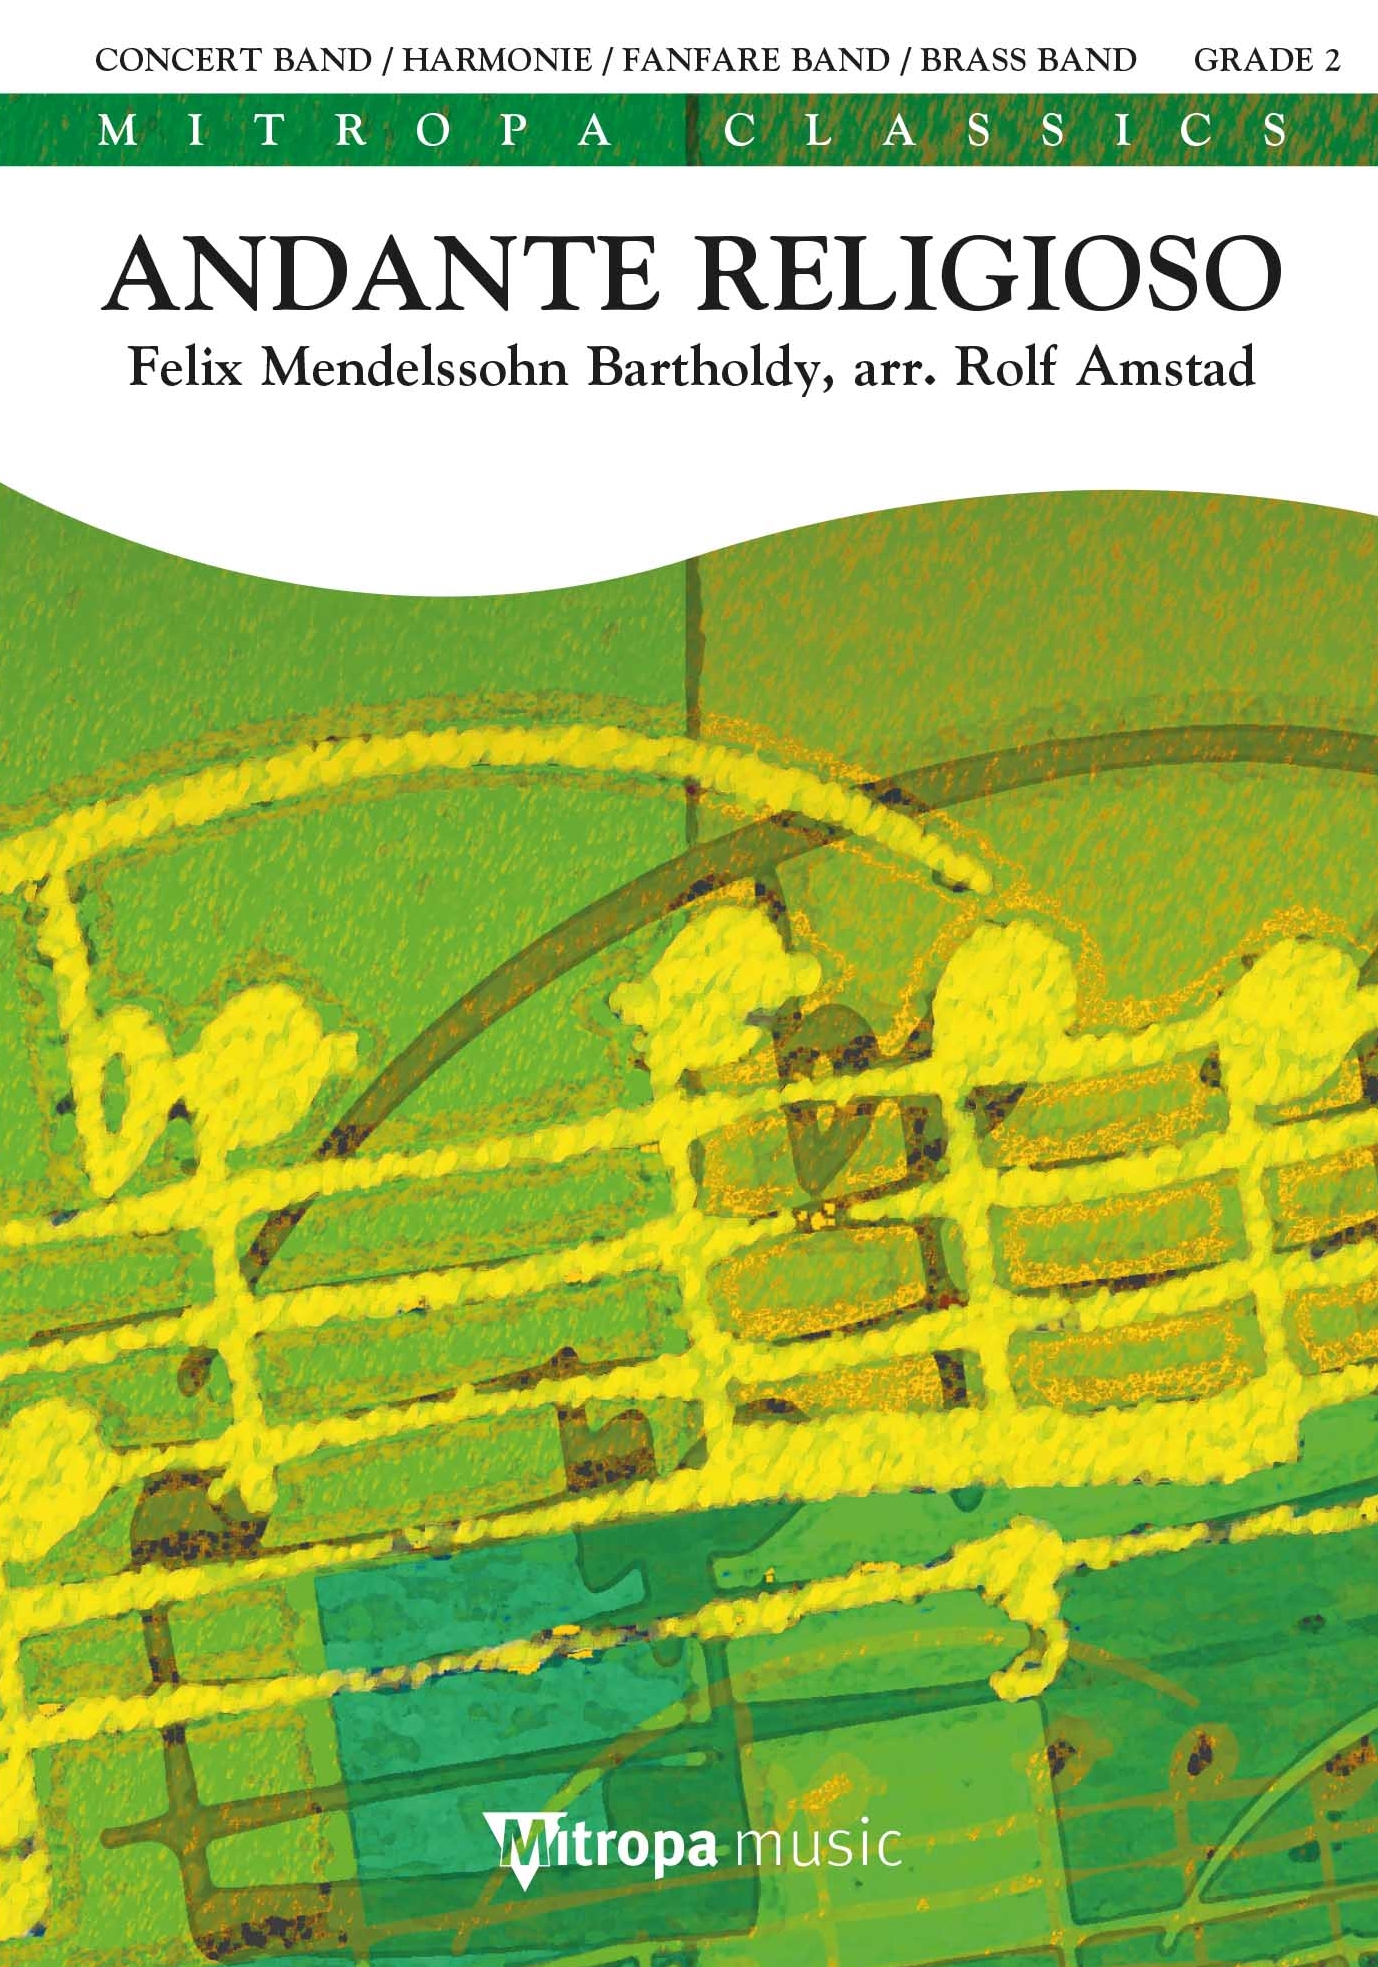 Felix Mendelssohn Bartholdy: Andante Religioso: Concert Band: Score